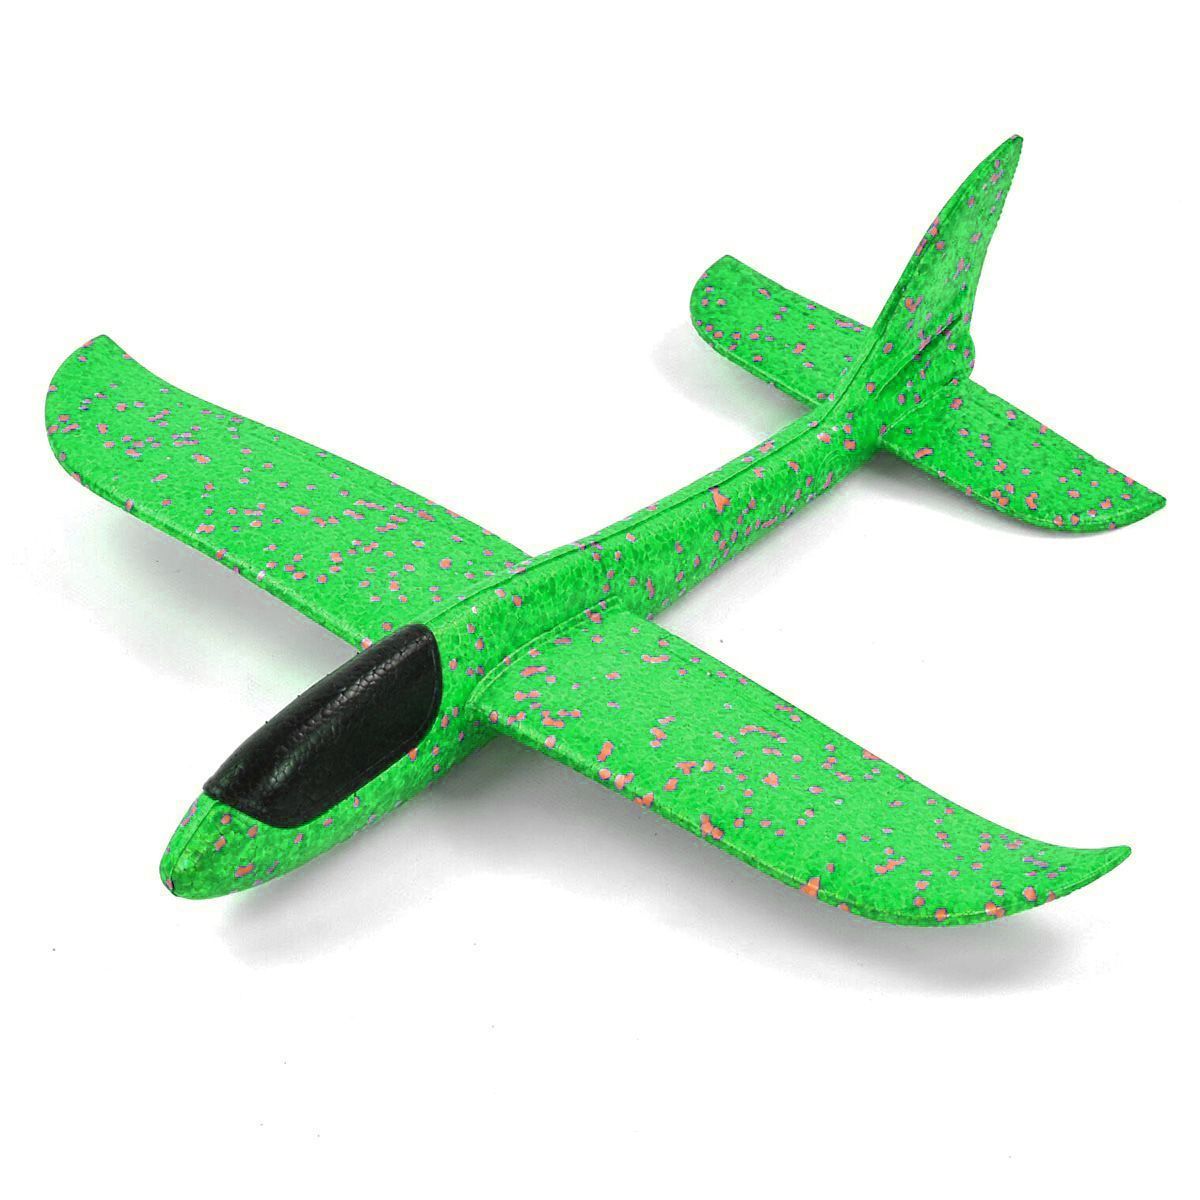 Пінопластовий планер-літачок, 48 см, зелений